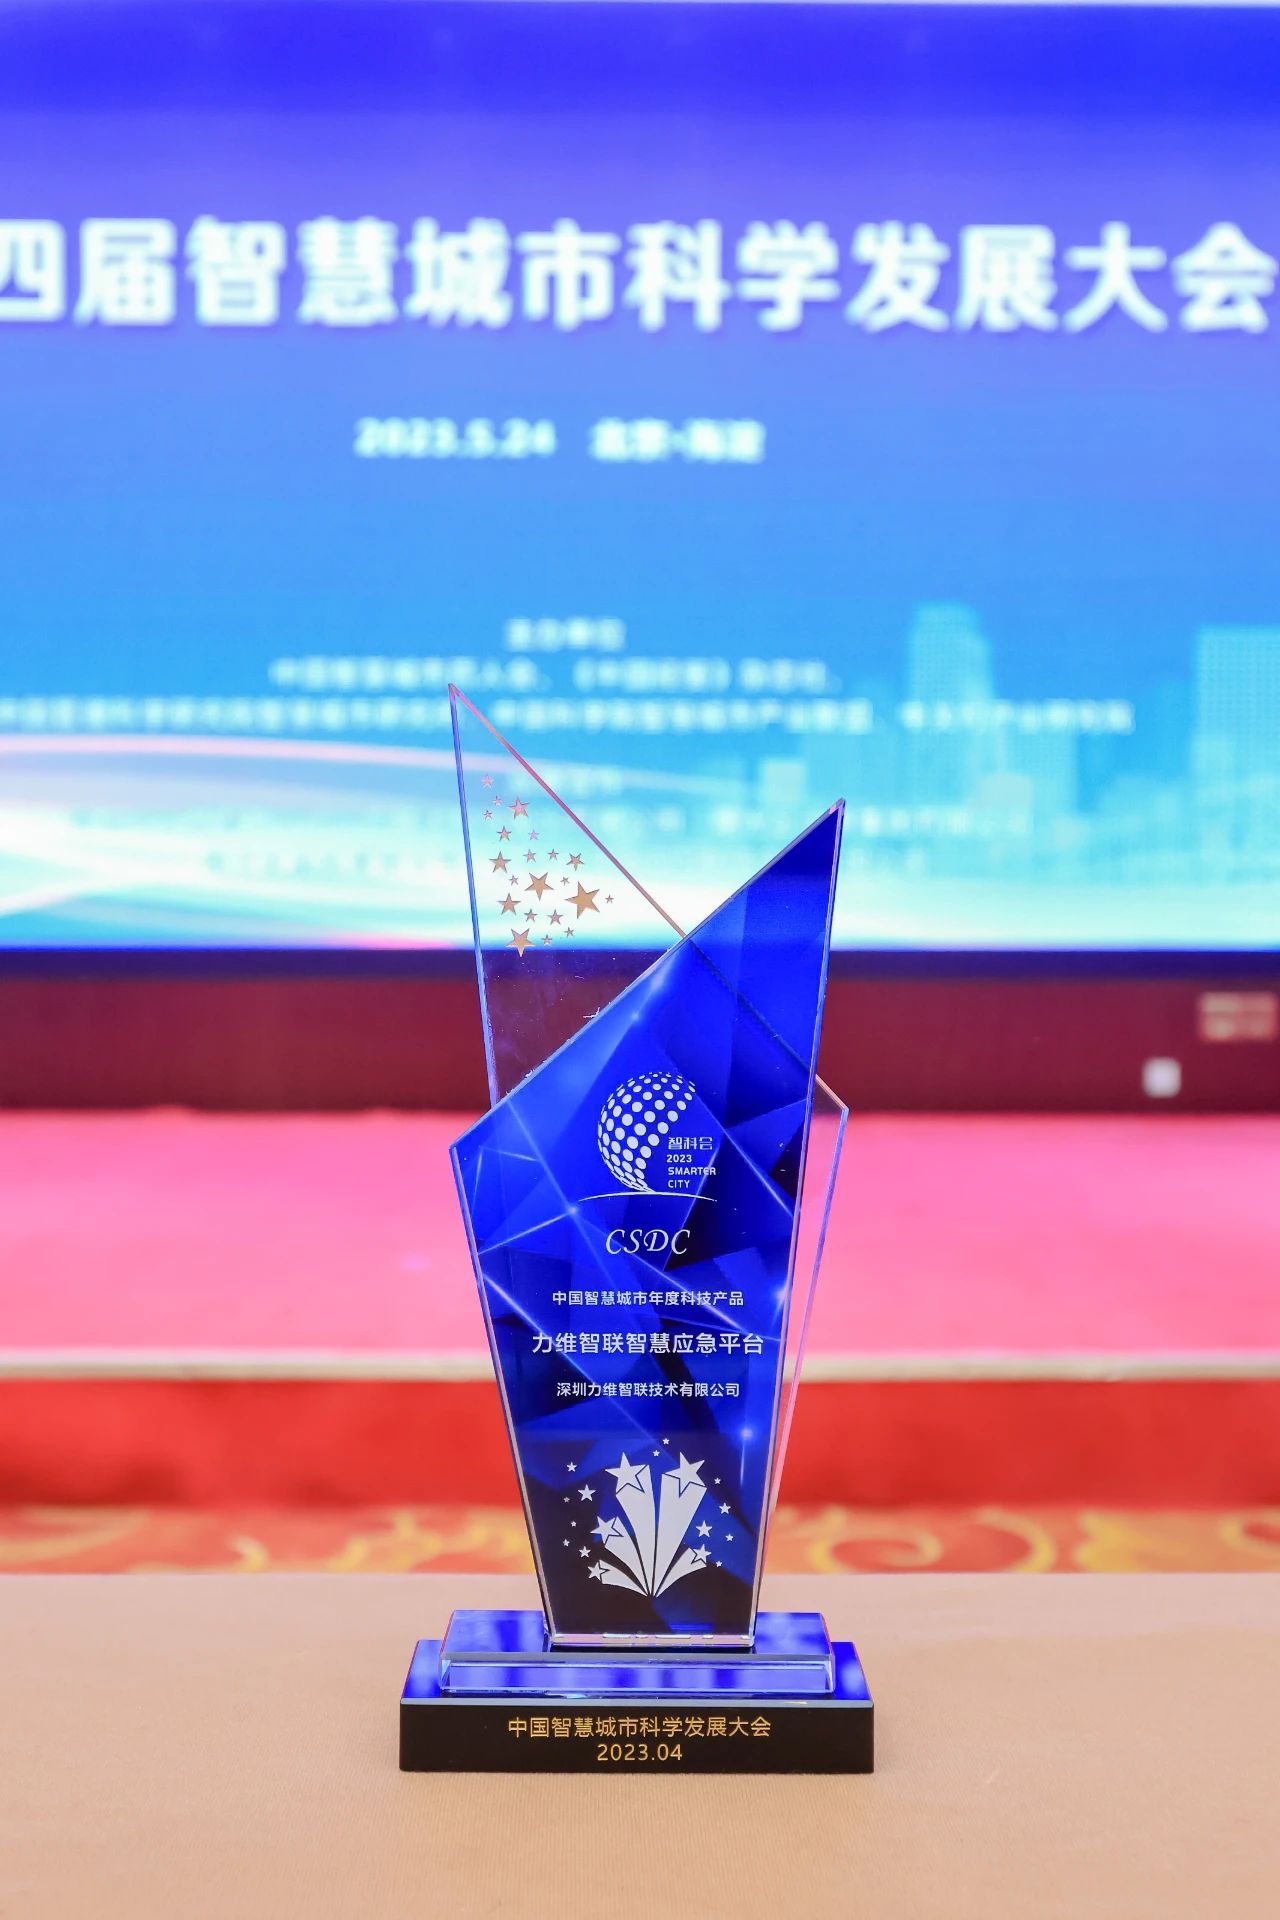 业界荣誉 | 力维智联智慧应急系统荣膺“中国智慧城市年度科技产品”